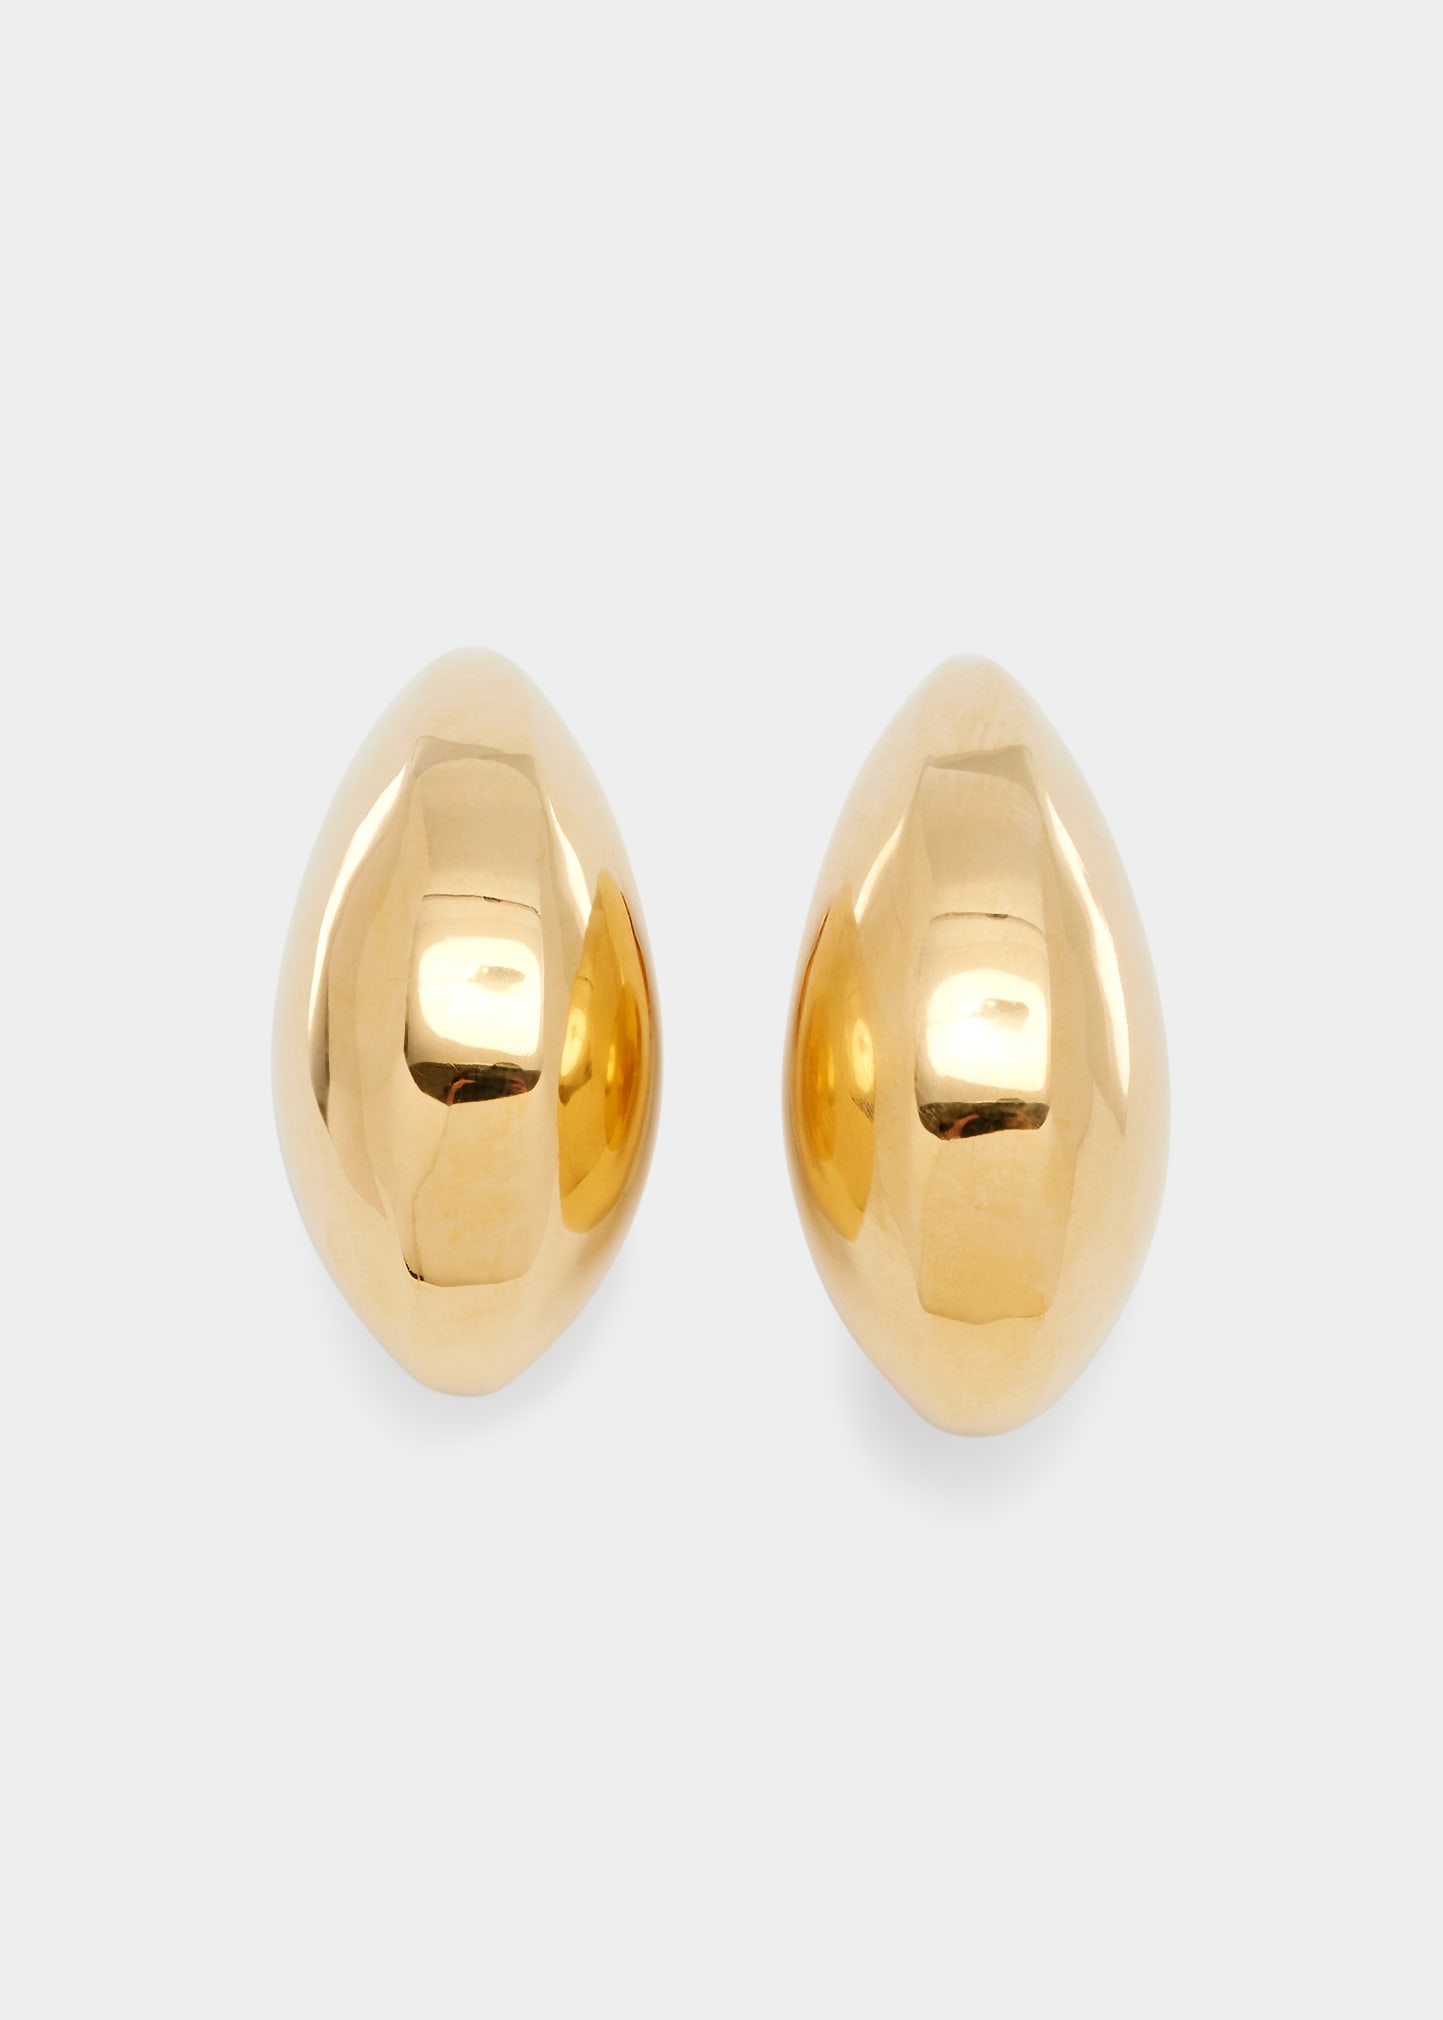 Faceted Teardrop Clip Earrings in 18K Gold